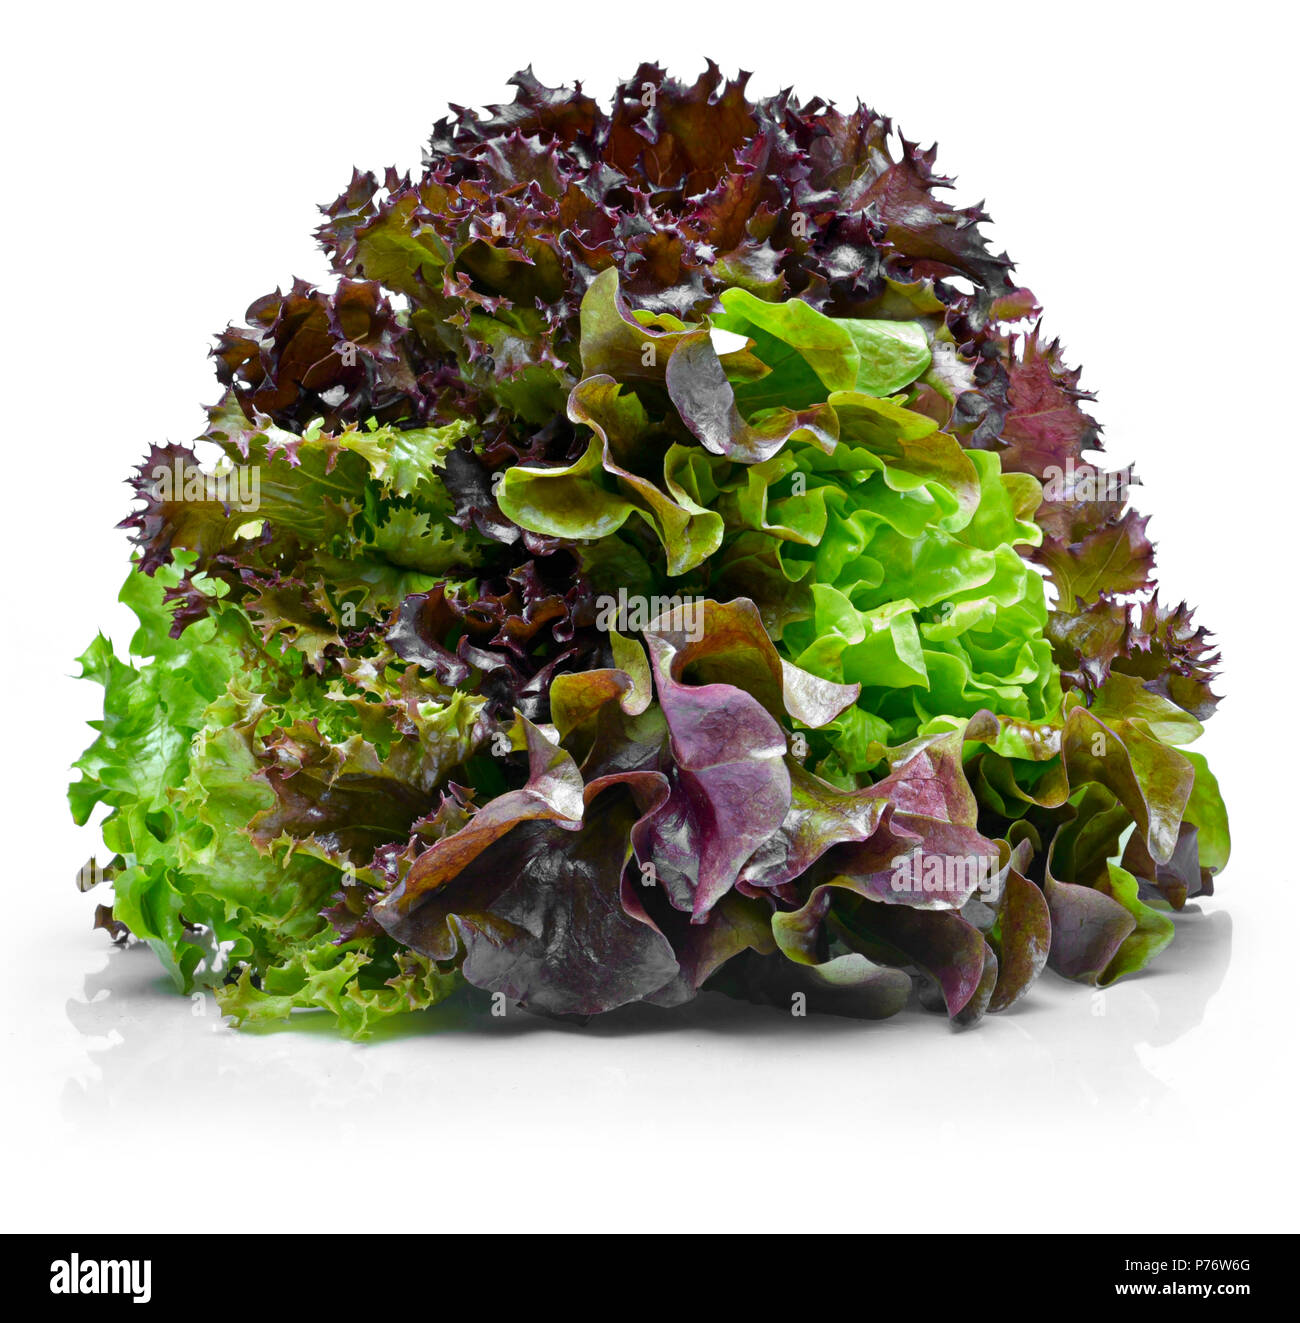 Köstliche, Frische eiche Salat oder Salat mischen. tricolor Salat oder gemischter Salat, auf weißem Hintergrund. Stockfoto